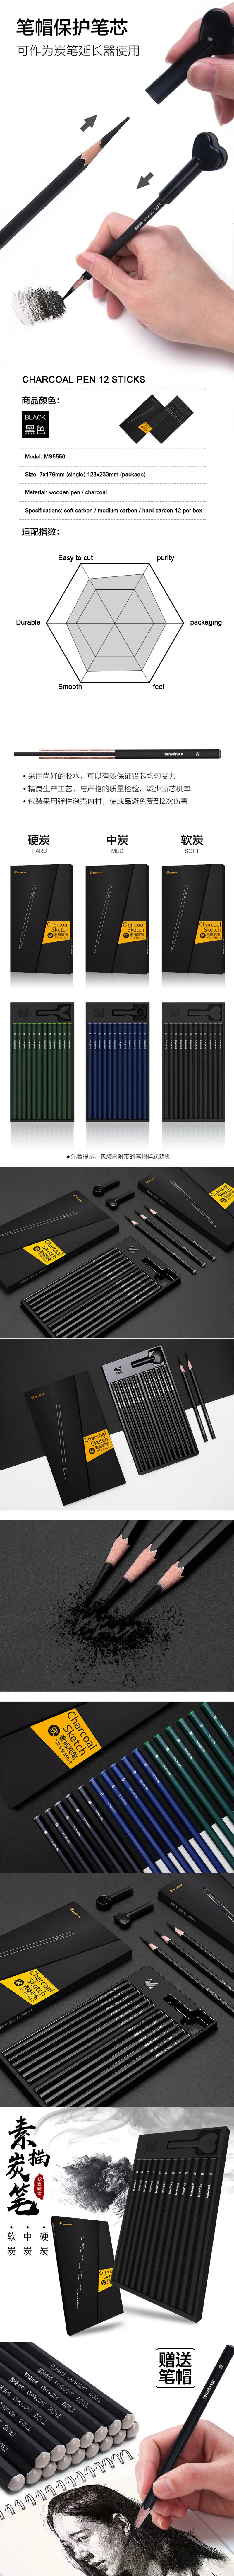 Карандаш для рисования угольным углем, карандаш для рисования, эскиз, эскиз, углеродная ручка, мягкая, средняя, жесткая